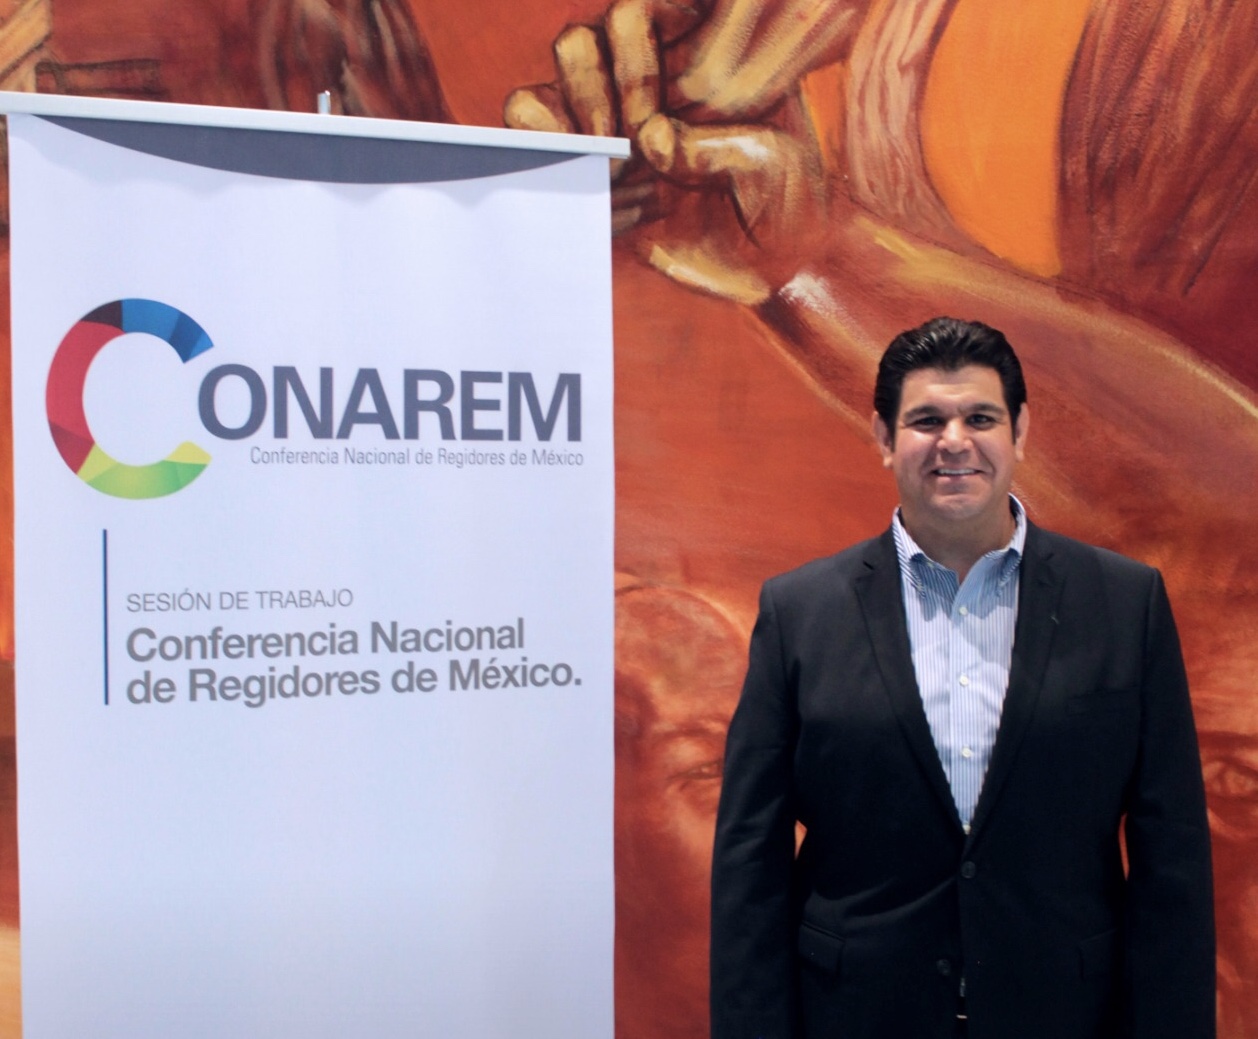 Claudio Sinecio el regidor de Querétaro que presidirá la CONAREM